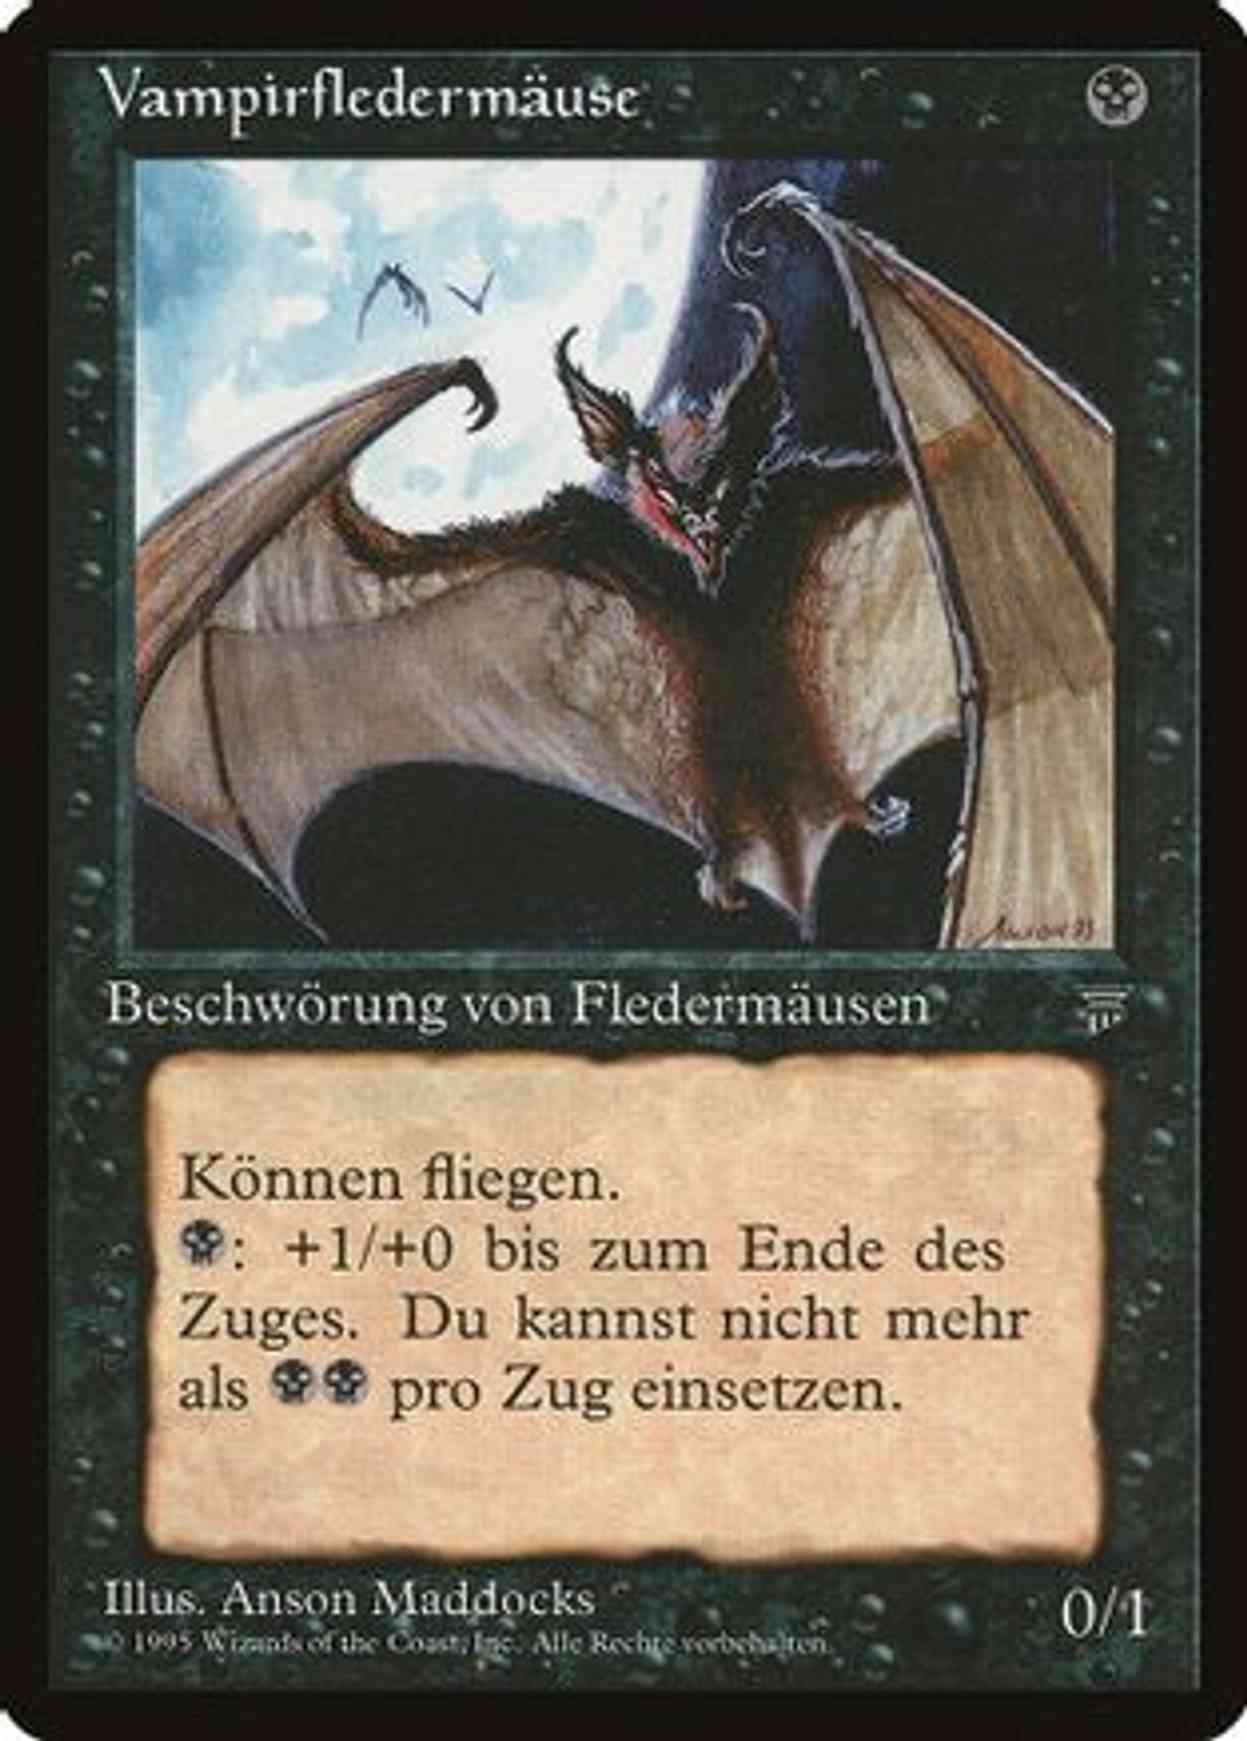 Vampire Bats (German) - "Vampirfledermause" magic card front